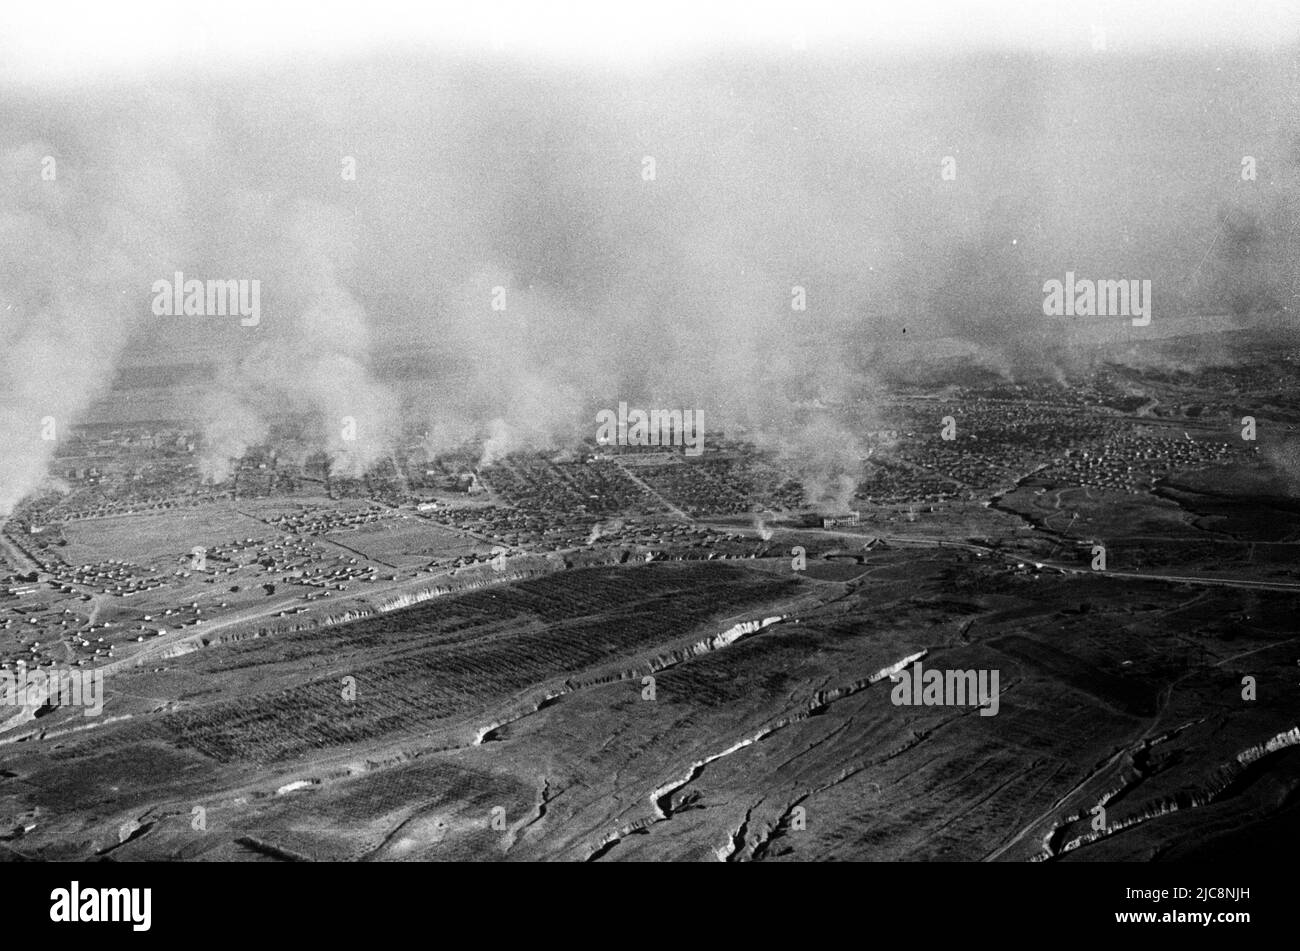 Documents sur les attentats à la bombe de l'armée de l'air allemande pendant la guerre mondiale 2 en septembre 1942 dans la région de Donezk - Luhansk, Ukraine Banque D'Images